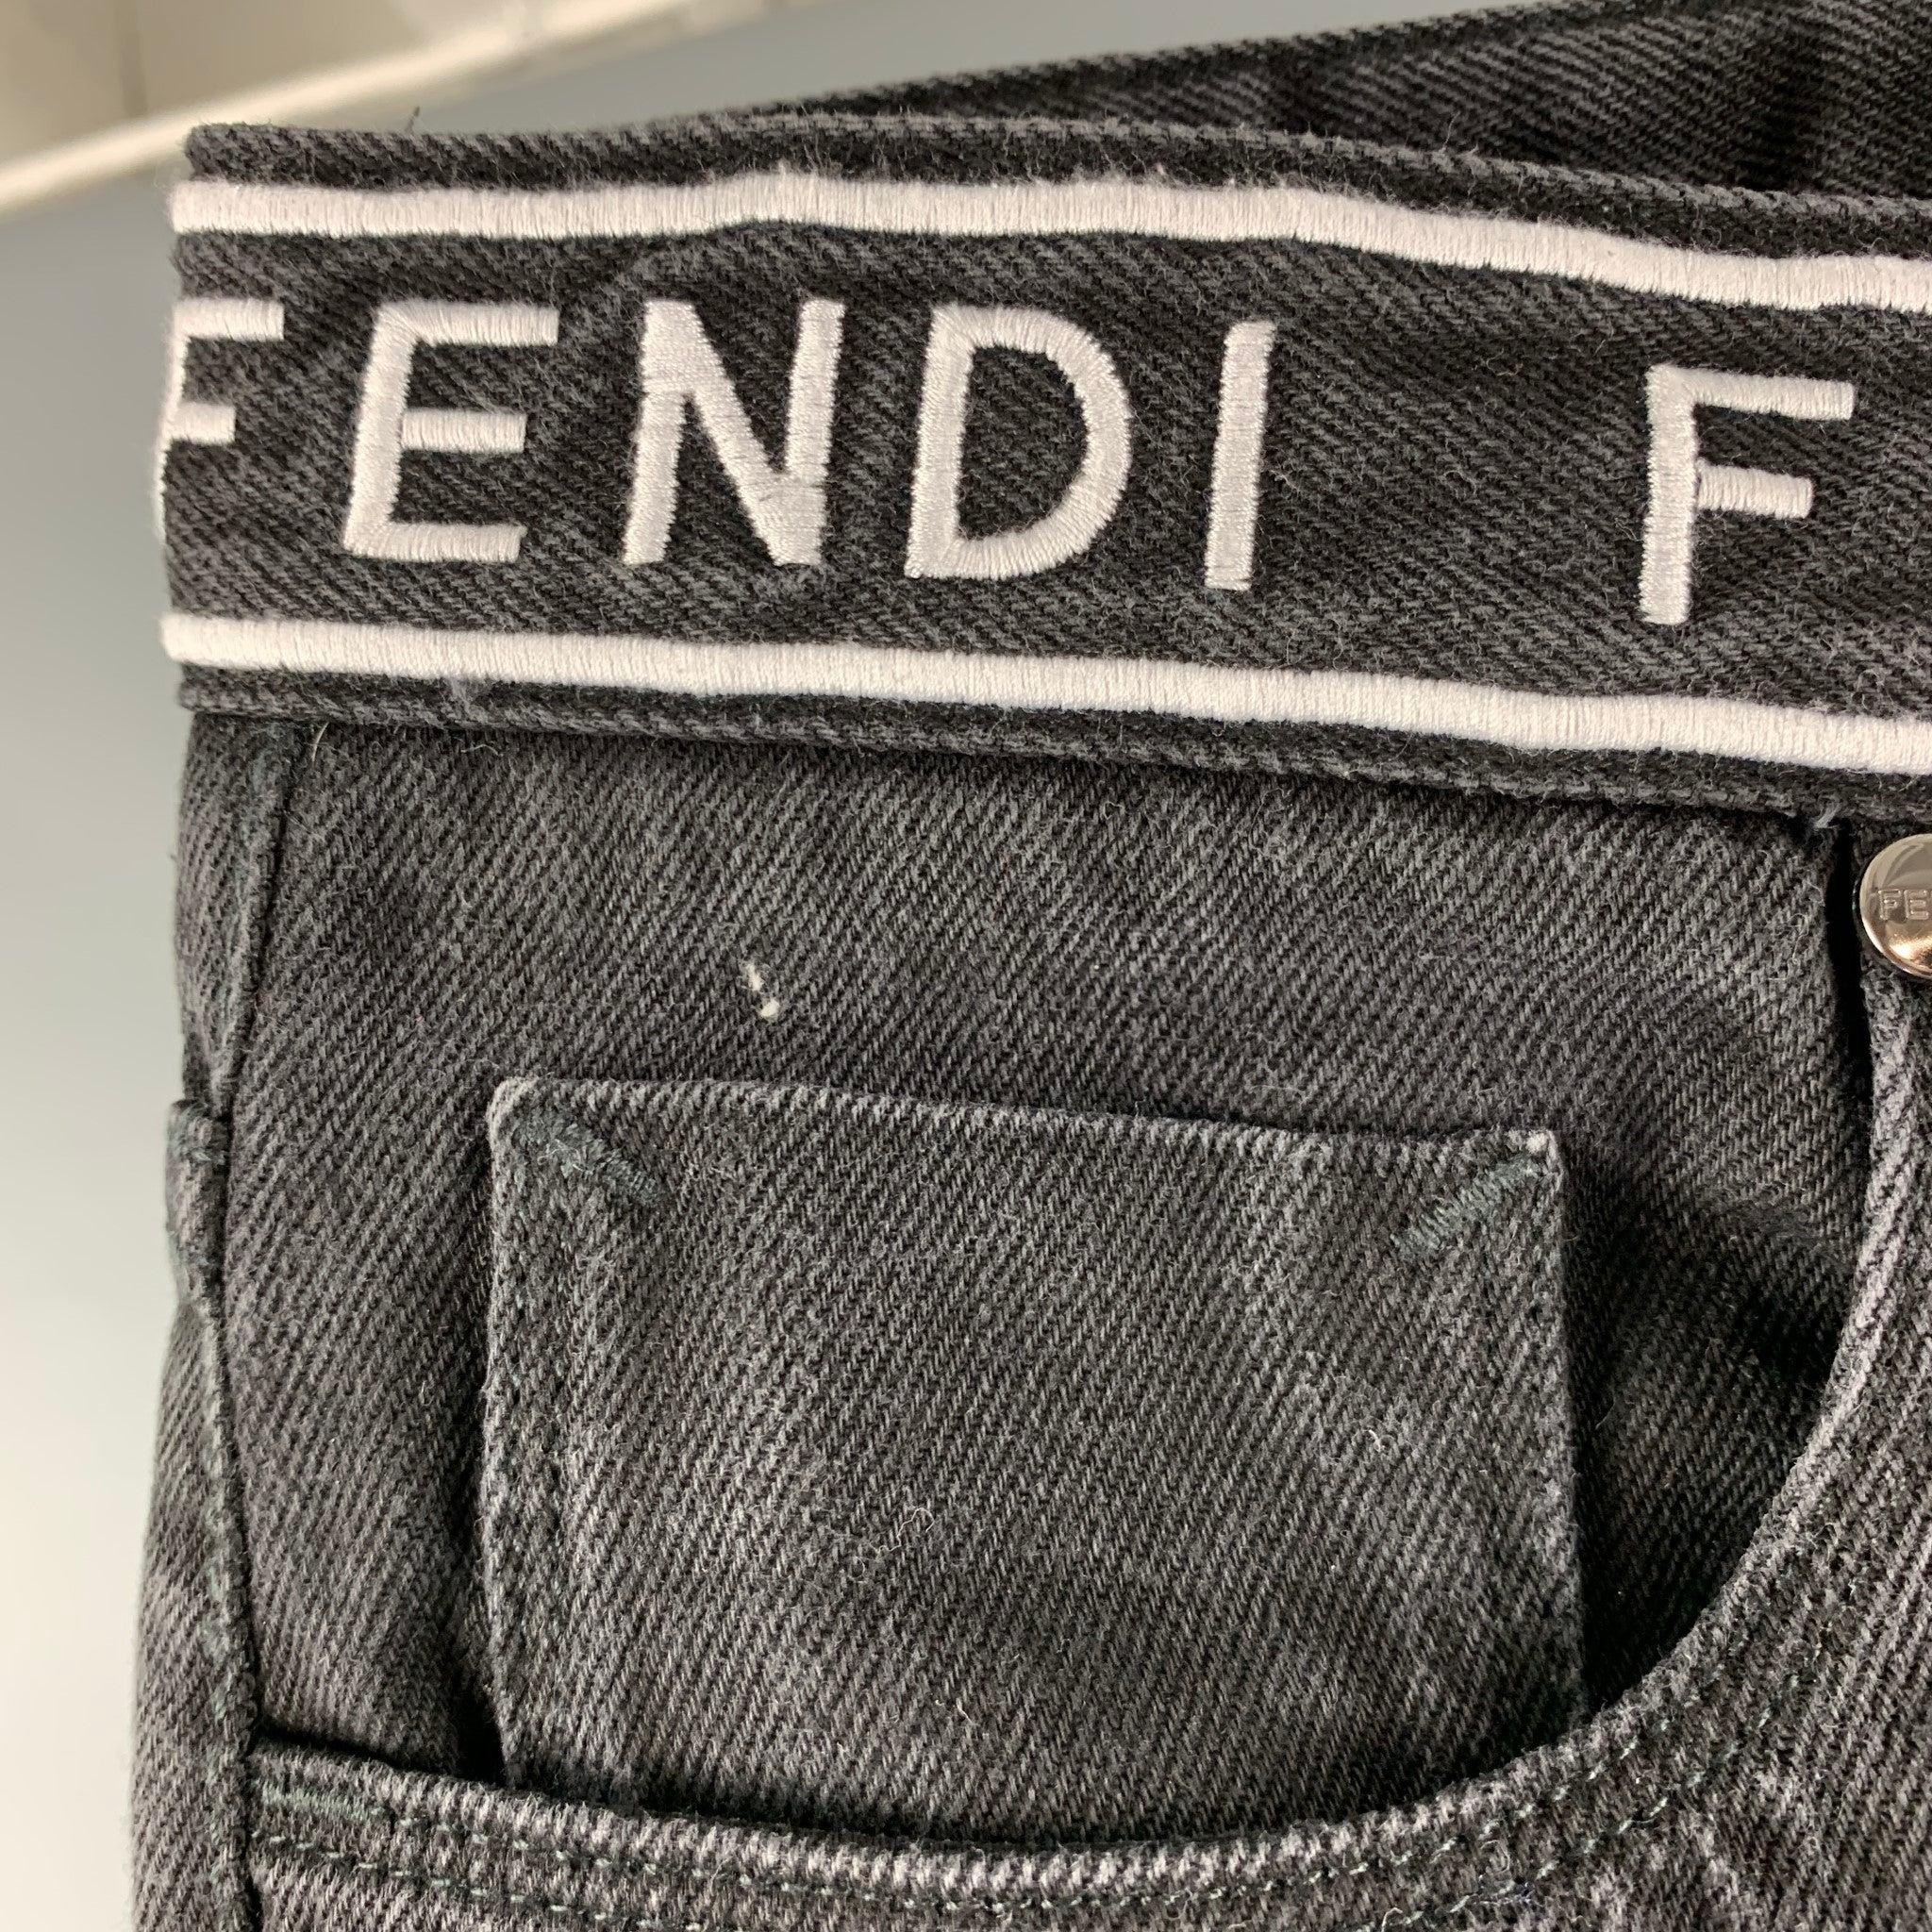 Ce jean en coton noir de Fendi présente une coupe ajustée, une ceinture à logo et une fermeture à glissière. Fabriqué en Italie. Excellent état. 

Marqué :   33/34 

Mesures : 
  Taille : 33 pouces Taille : 9.5 pouces Entrejambe : 32 pouces  
  
  
